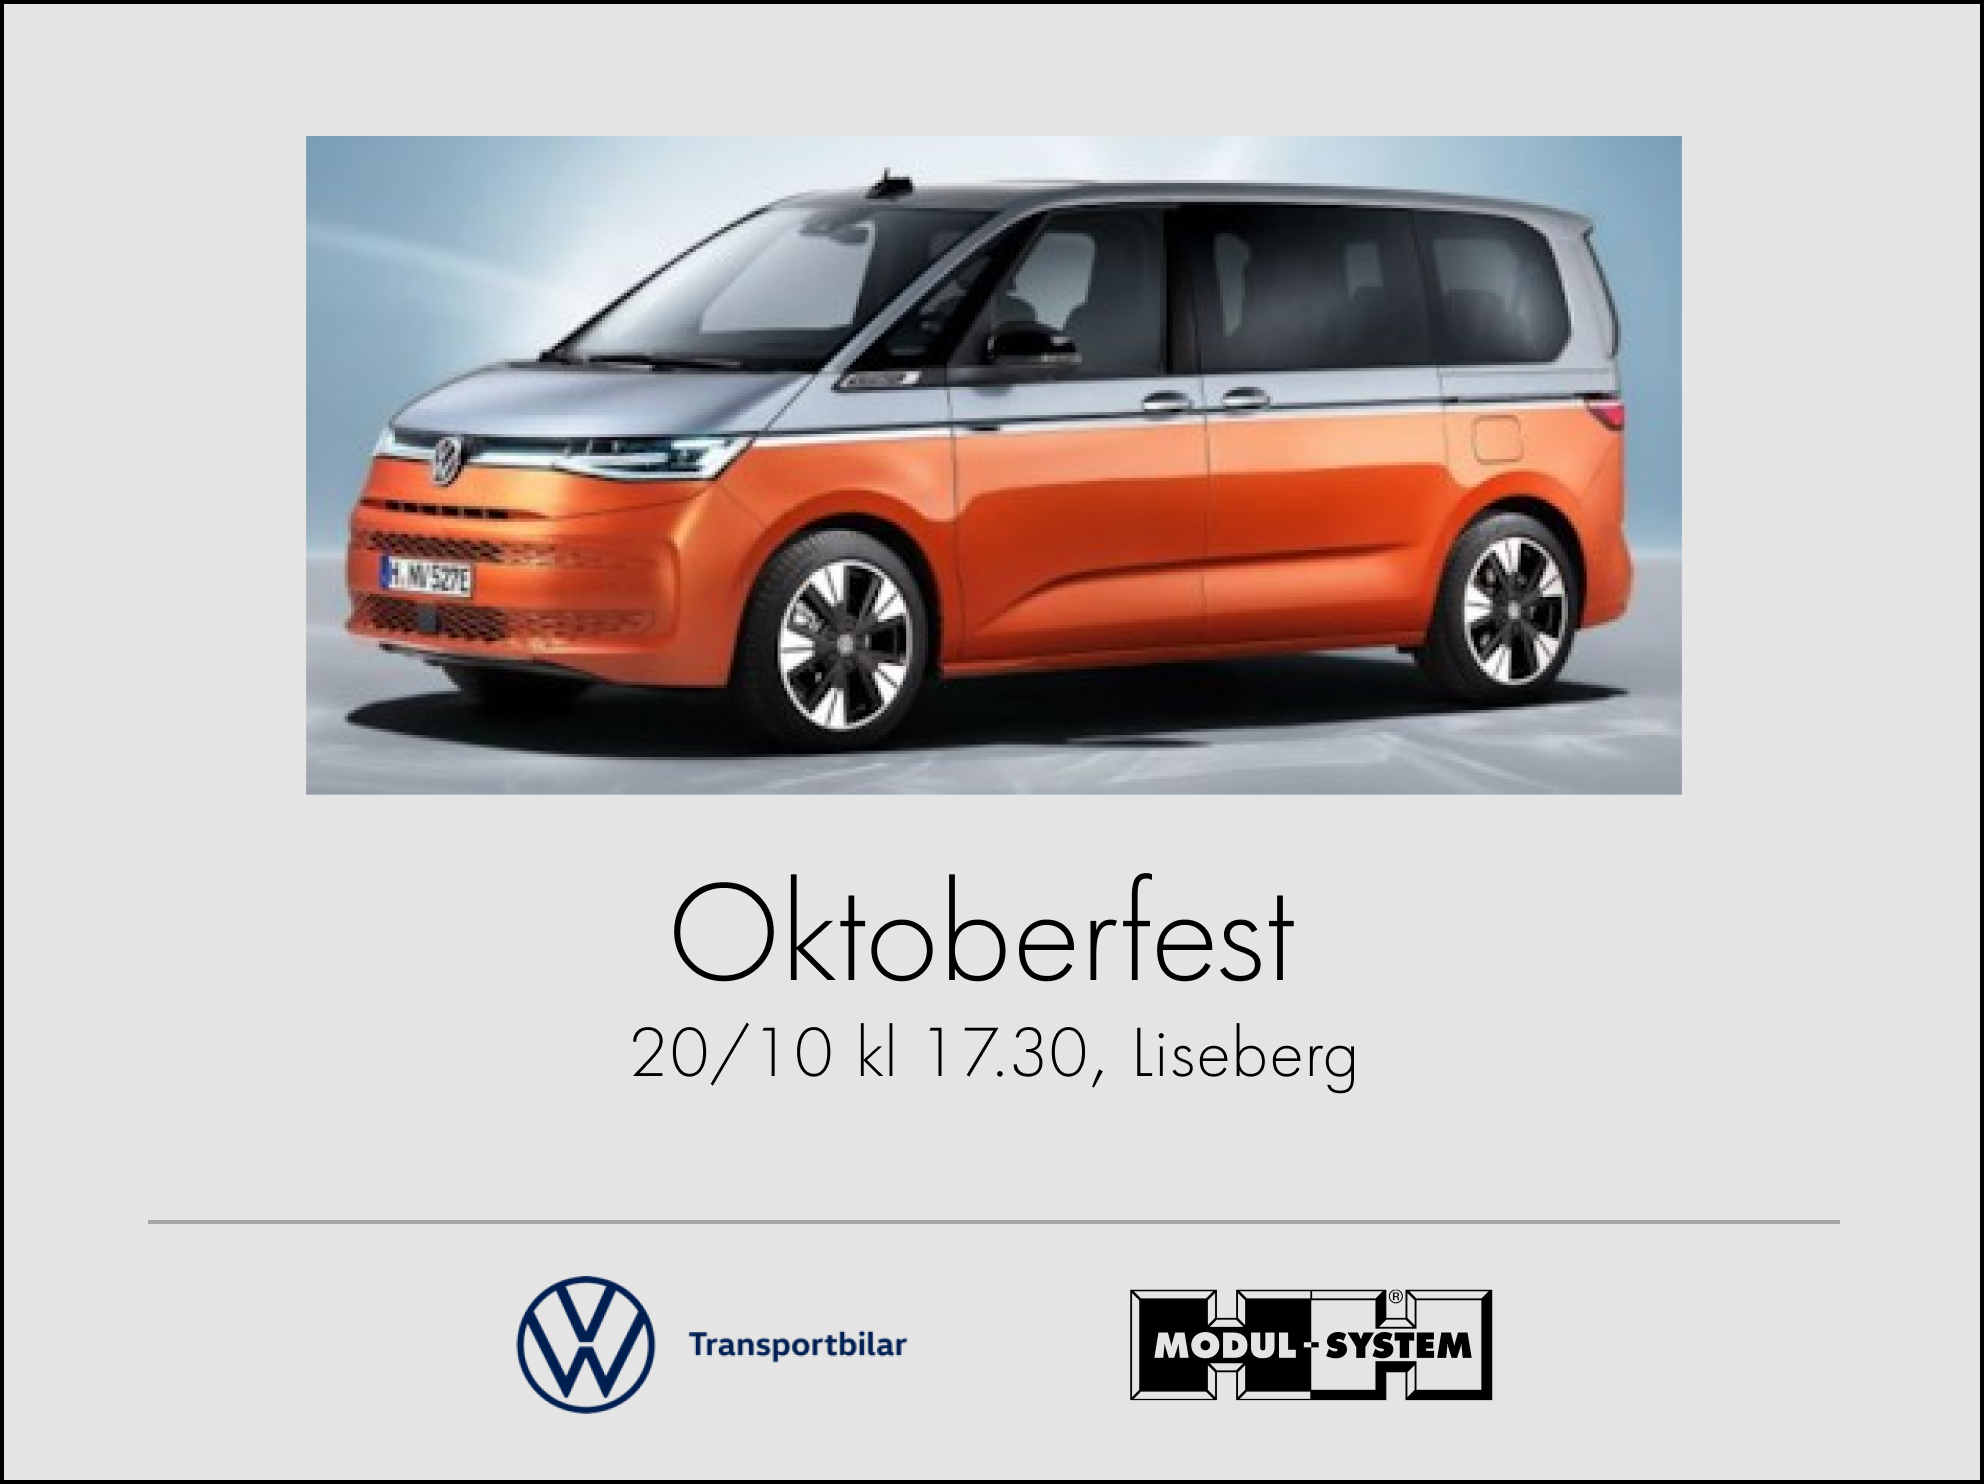 Du är välkommen på Oktoberfest på Liseberg tillsammans med Modul-System och Volkswagen Transportbilar den 20/10